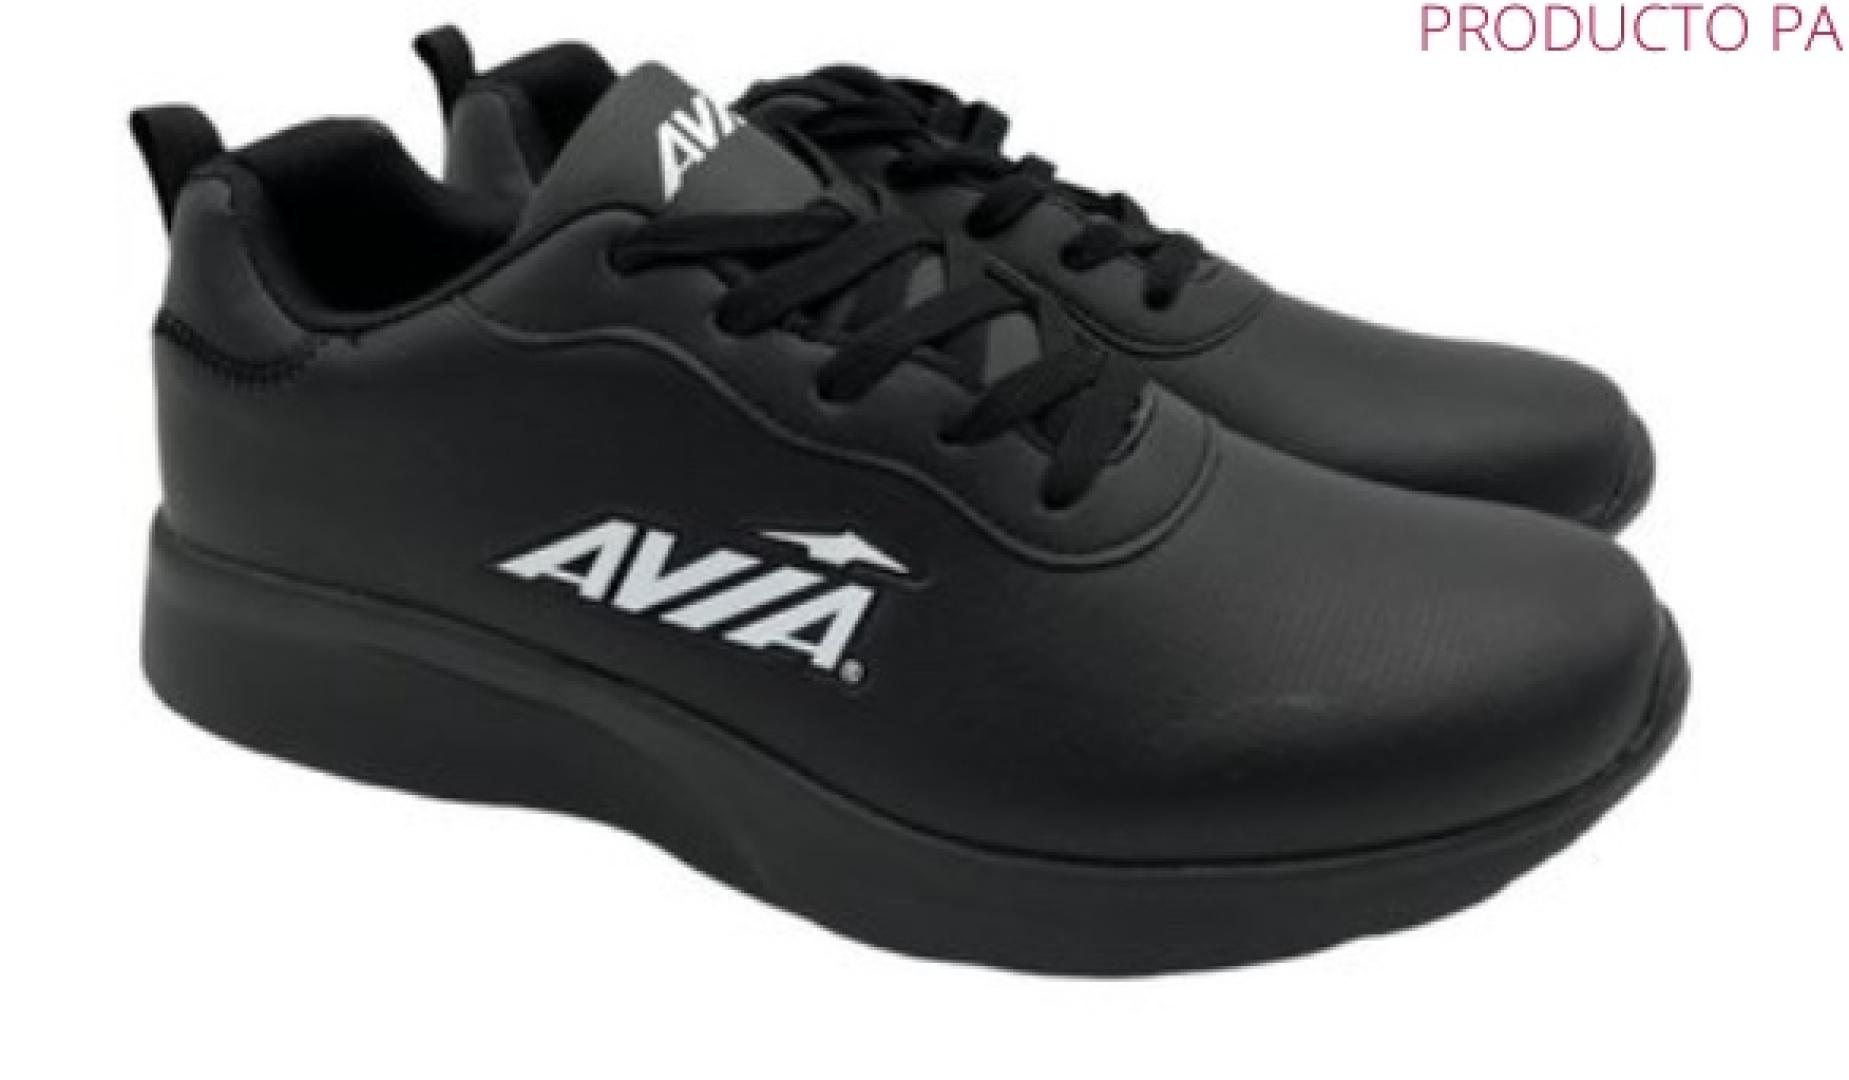 Zapatillas deportivas en negro para hombre de AVIA. D-230